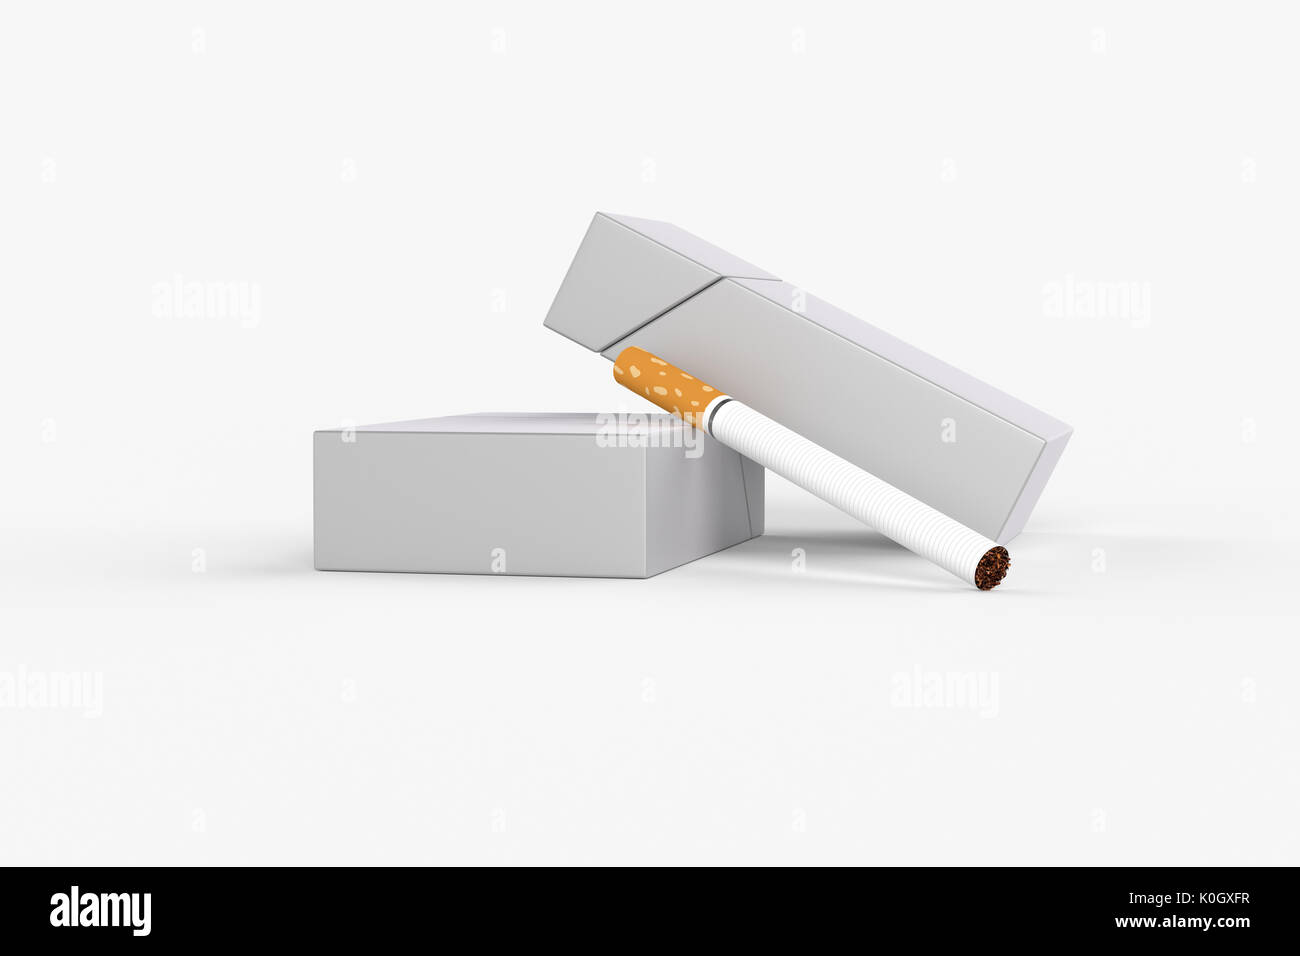 3D Render composición de dos cajas de cigarrillos king size o paquetes de cigarrillos con sobre un fondo blanco con sombra. Plantilla para su diseño. Foto de stock